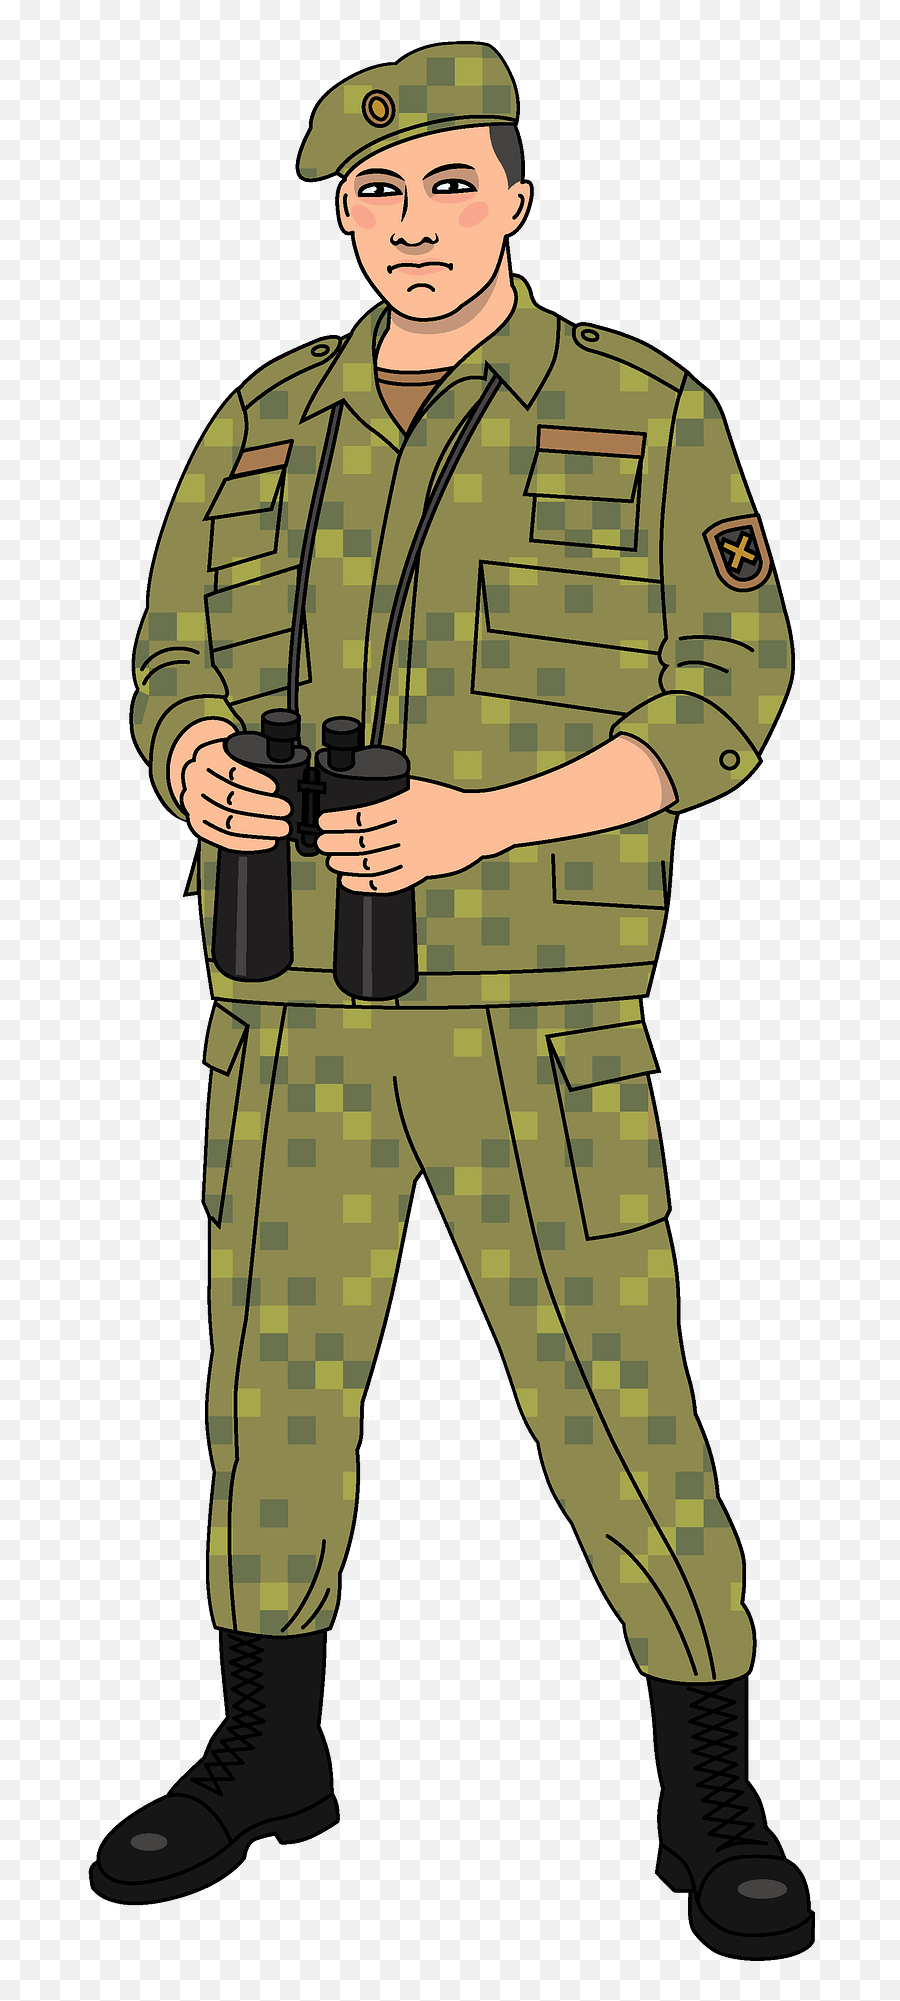 Soldier Clipart - Soldier Clipart Emoji,Soldier Clipart